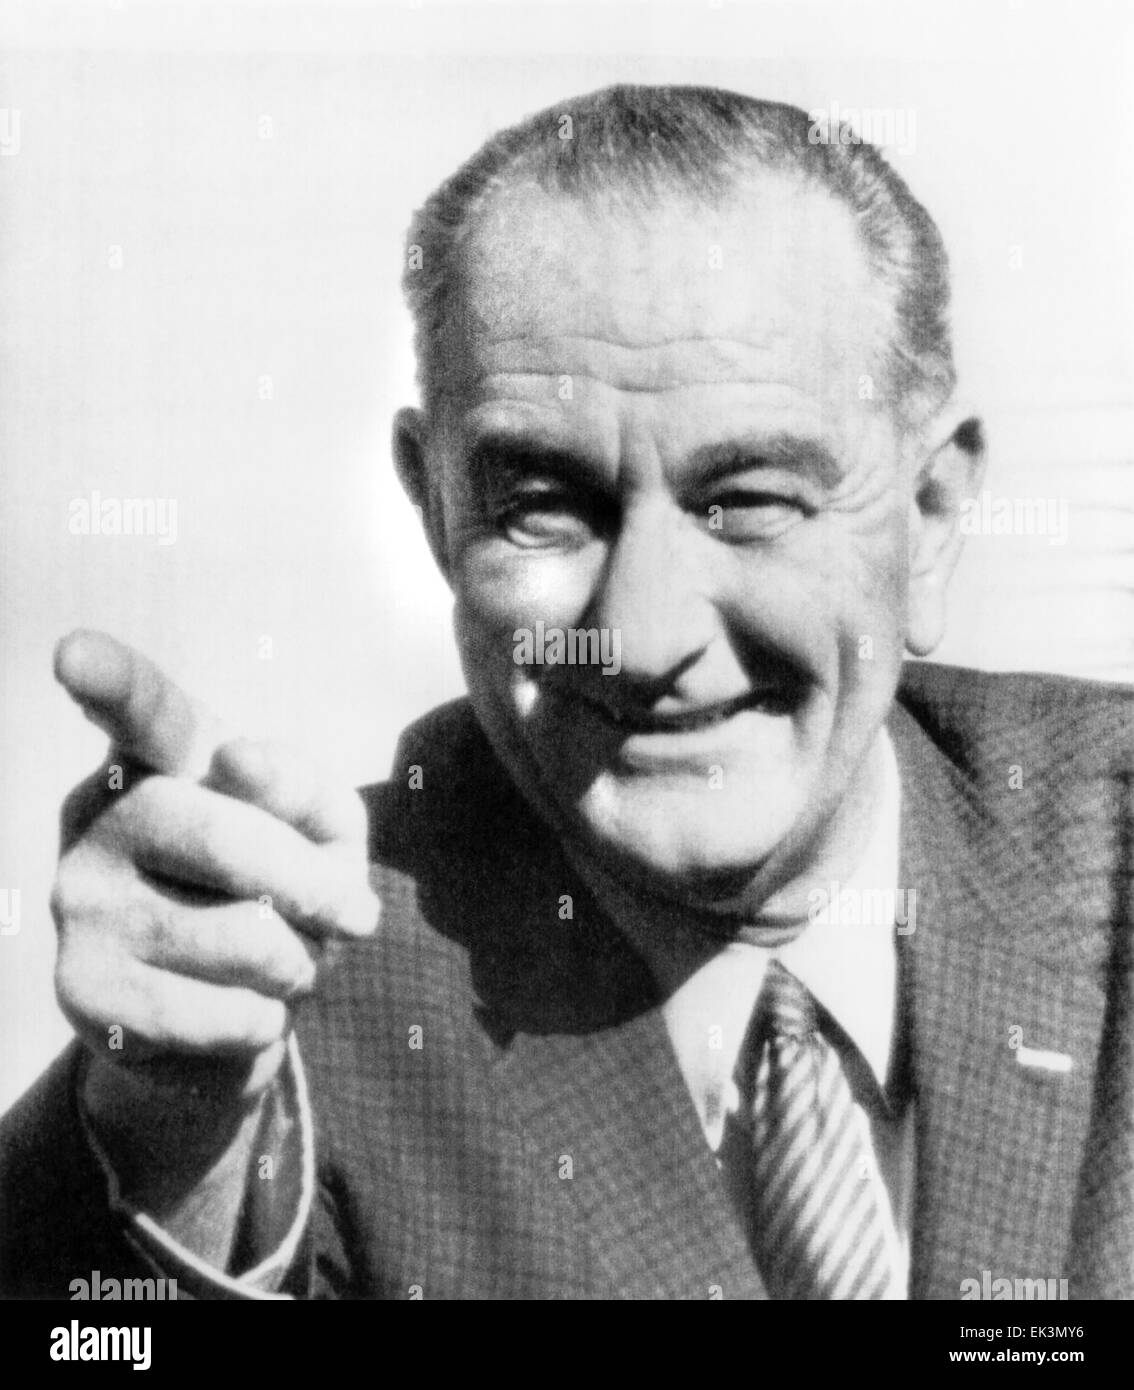 Stati Uniti Il presidente Lyndon Johnson, Ritratto, Dicembre 1963 Foto Stock